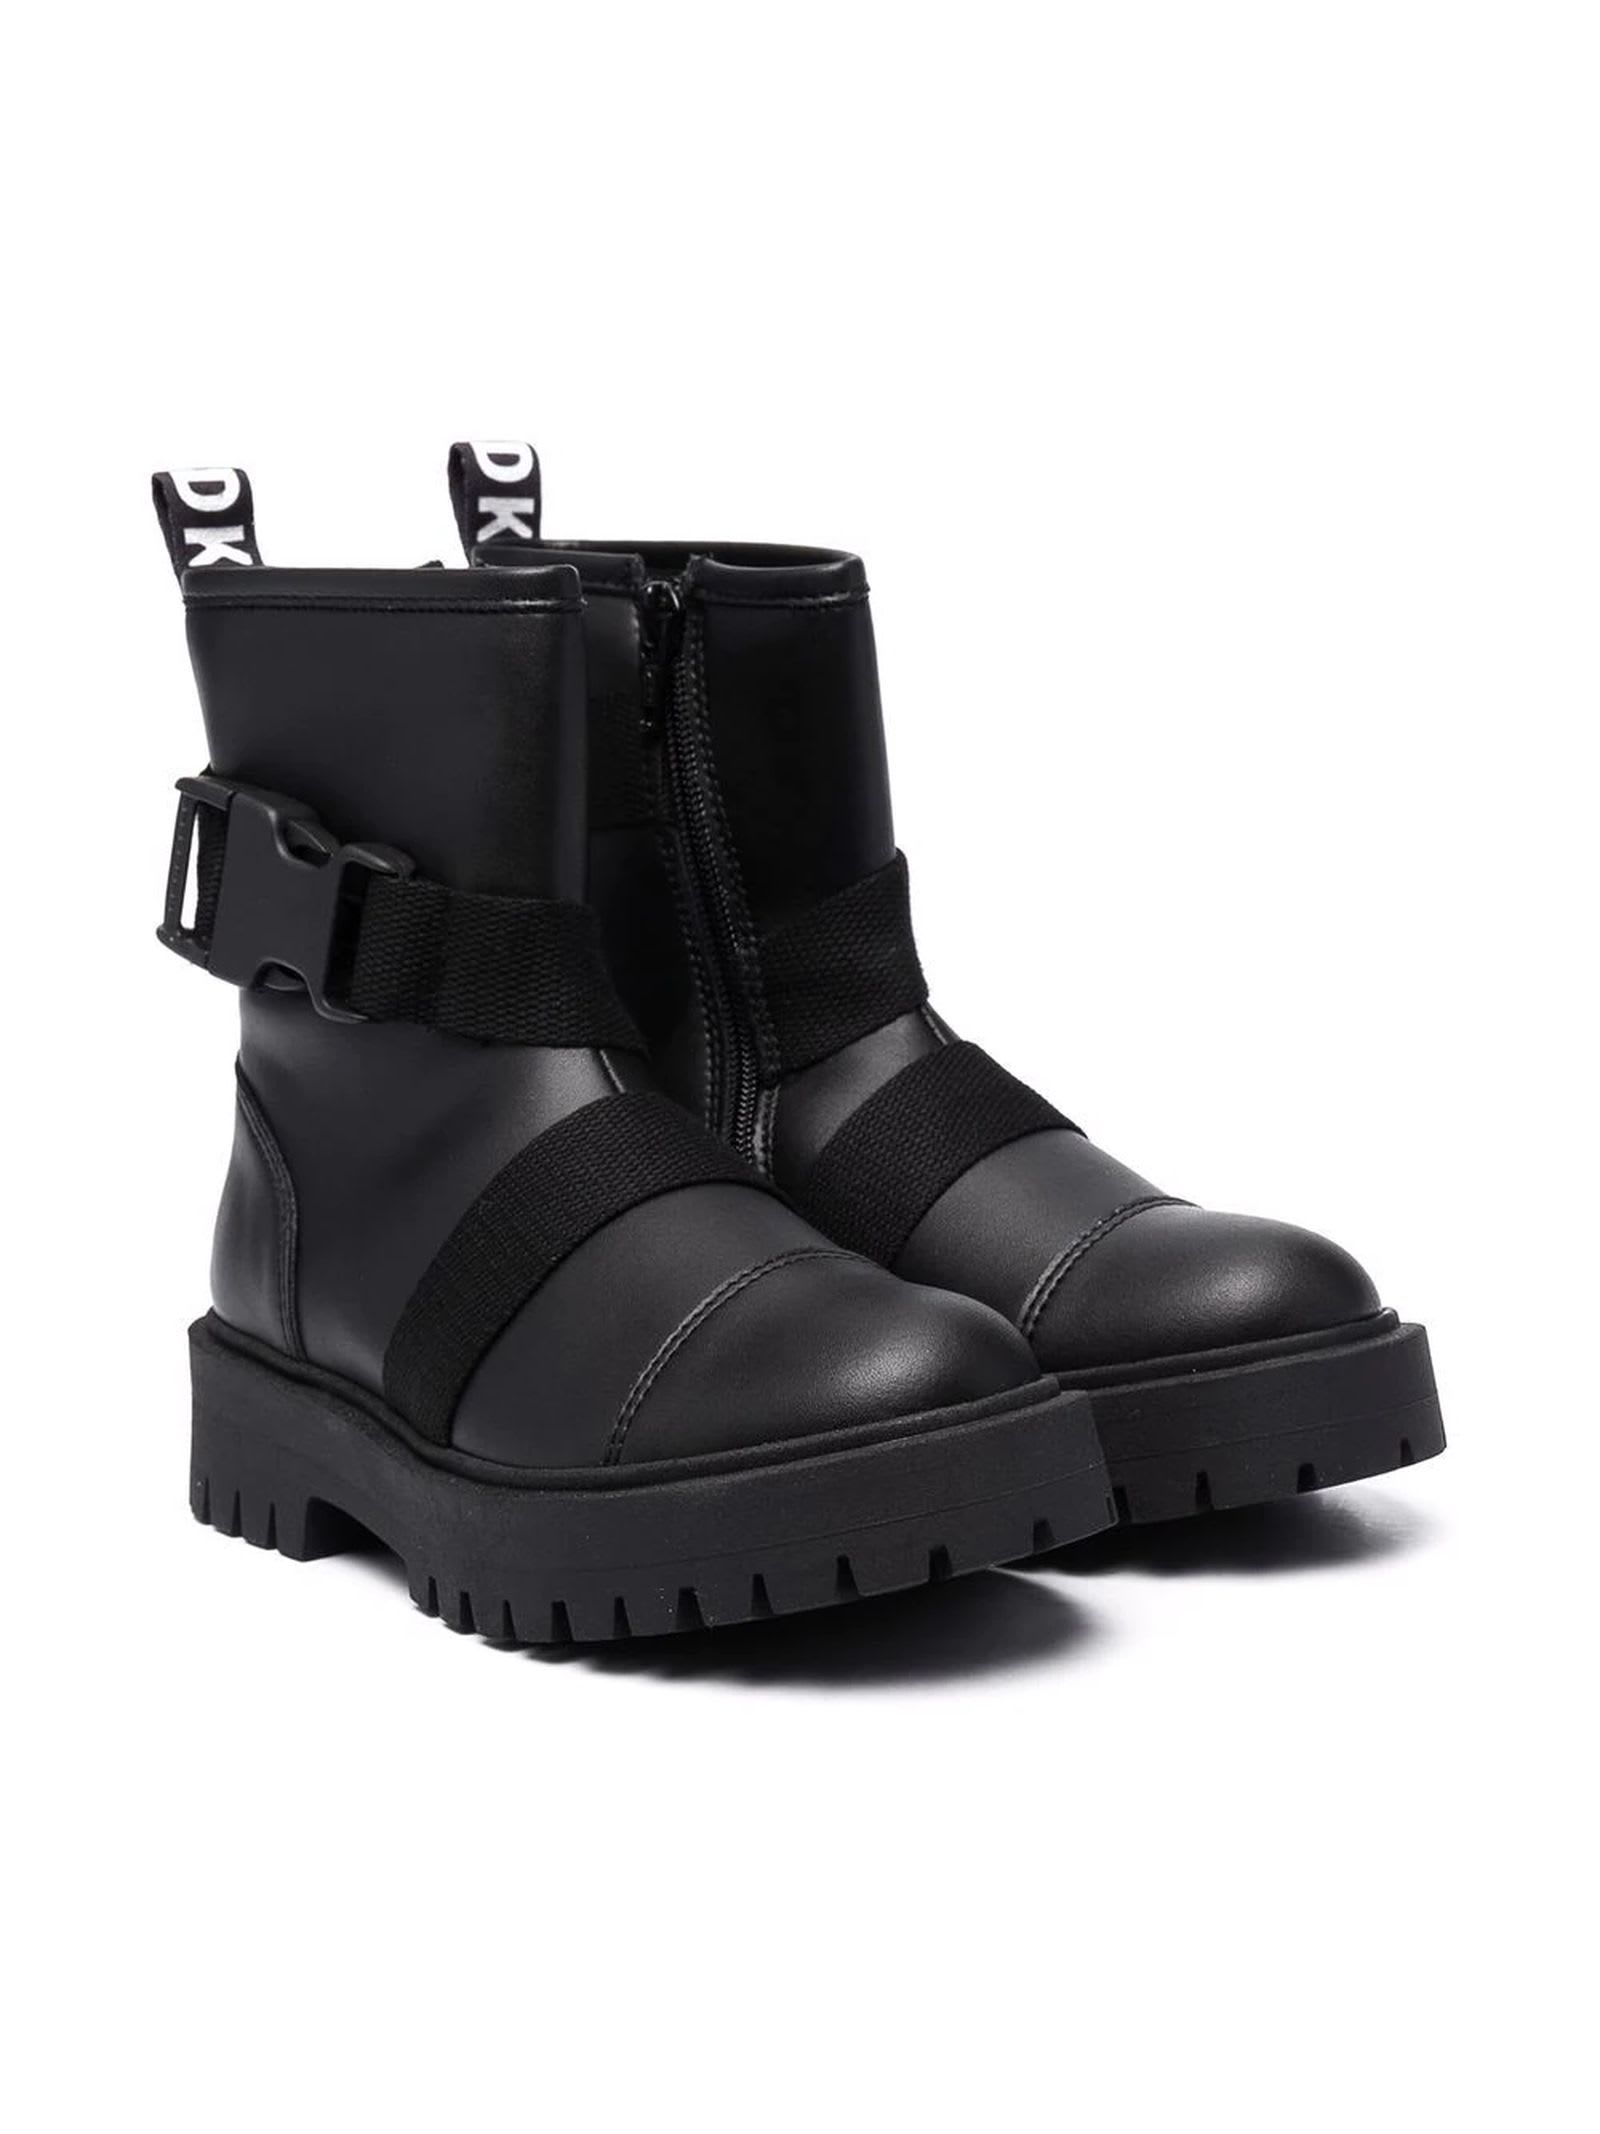 DKNY Black Chunky Boots